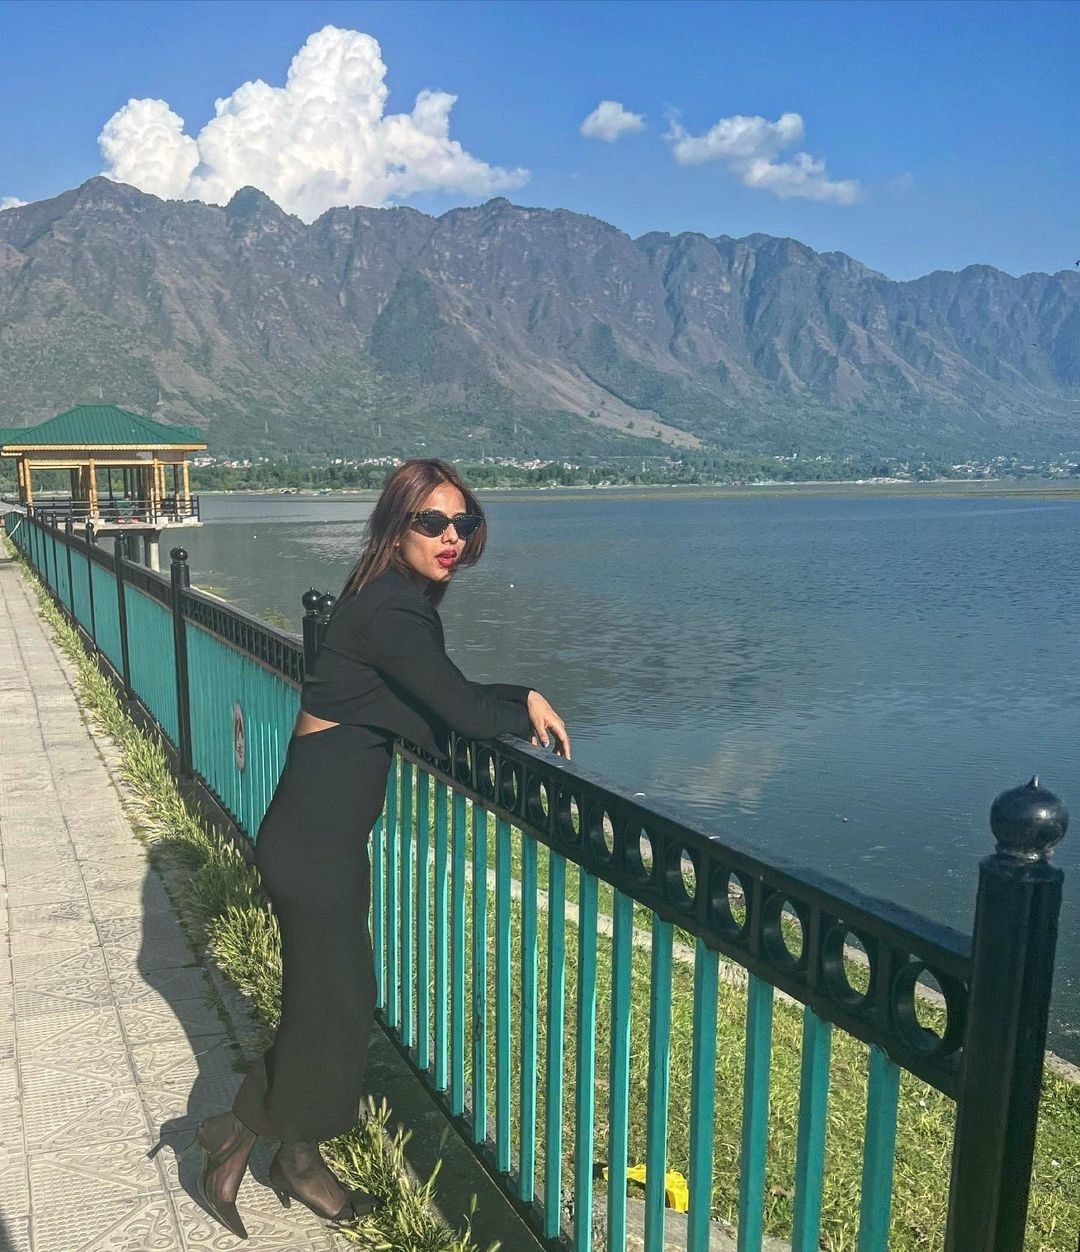 Nia Sharma reached Kashmir